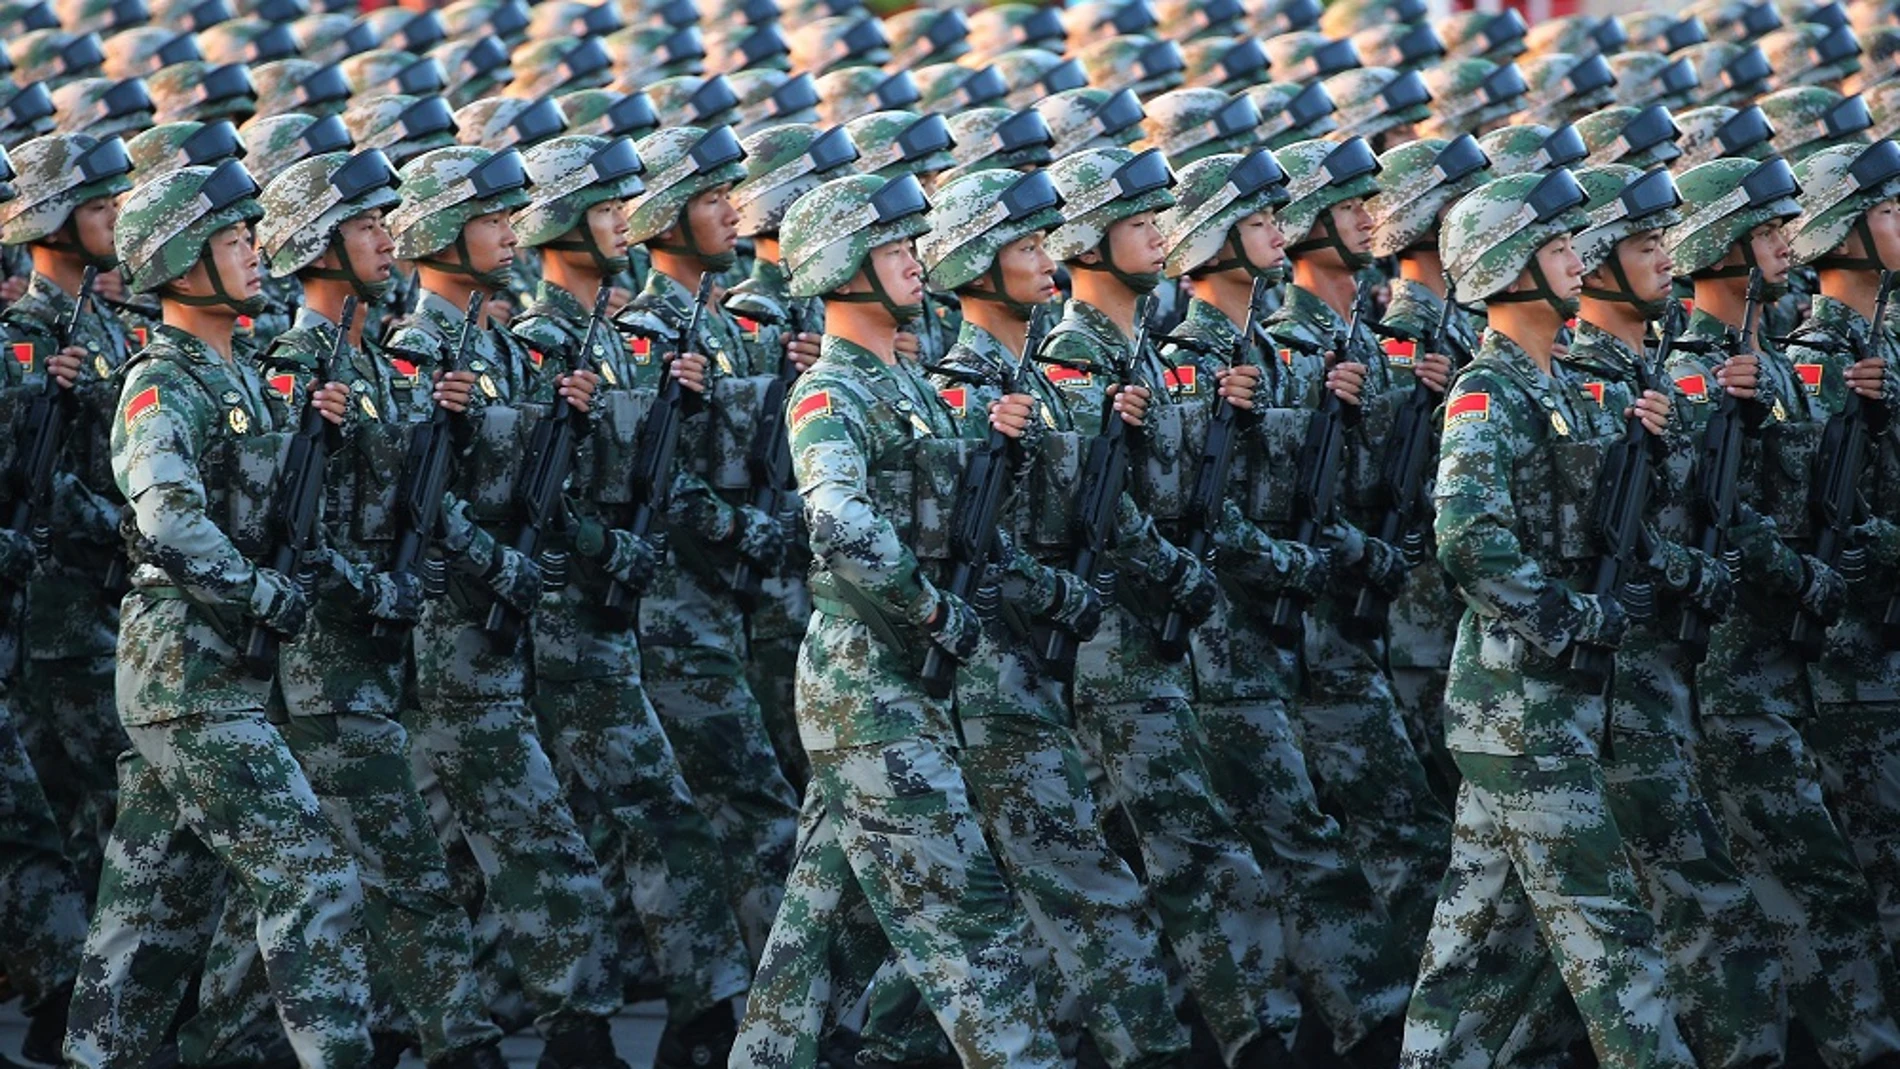 Soldados del Ejército Chino de Liberación Popular durante un desfile militar en la plaza Tiananmen en Beijing (China).